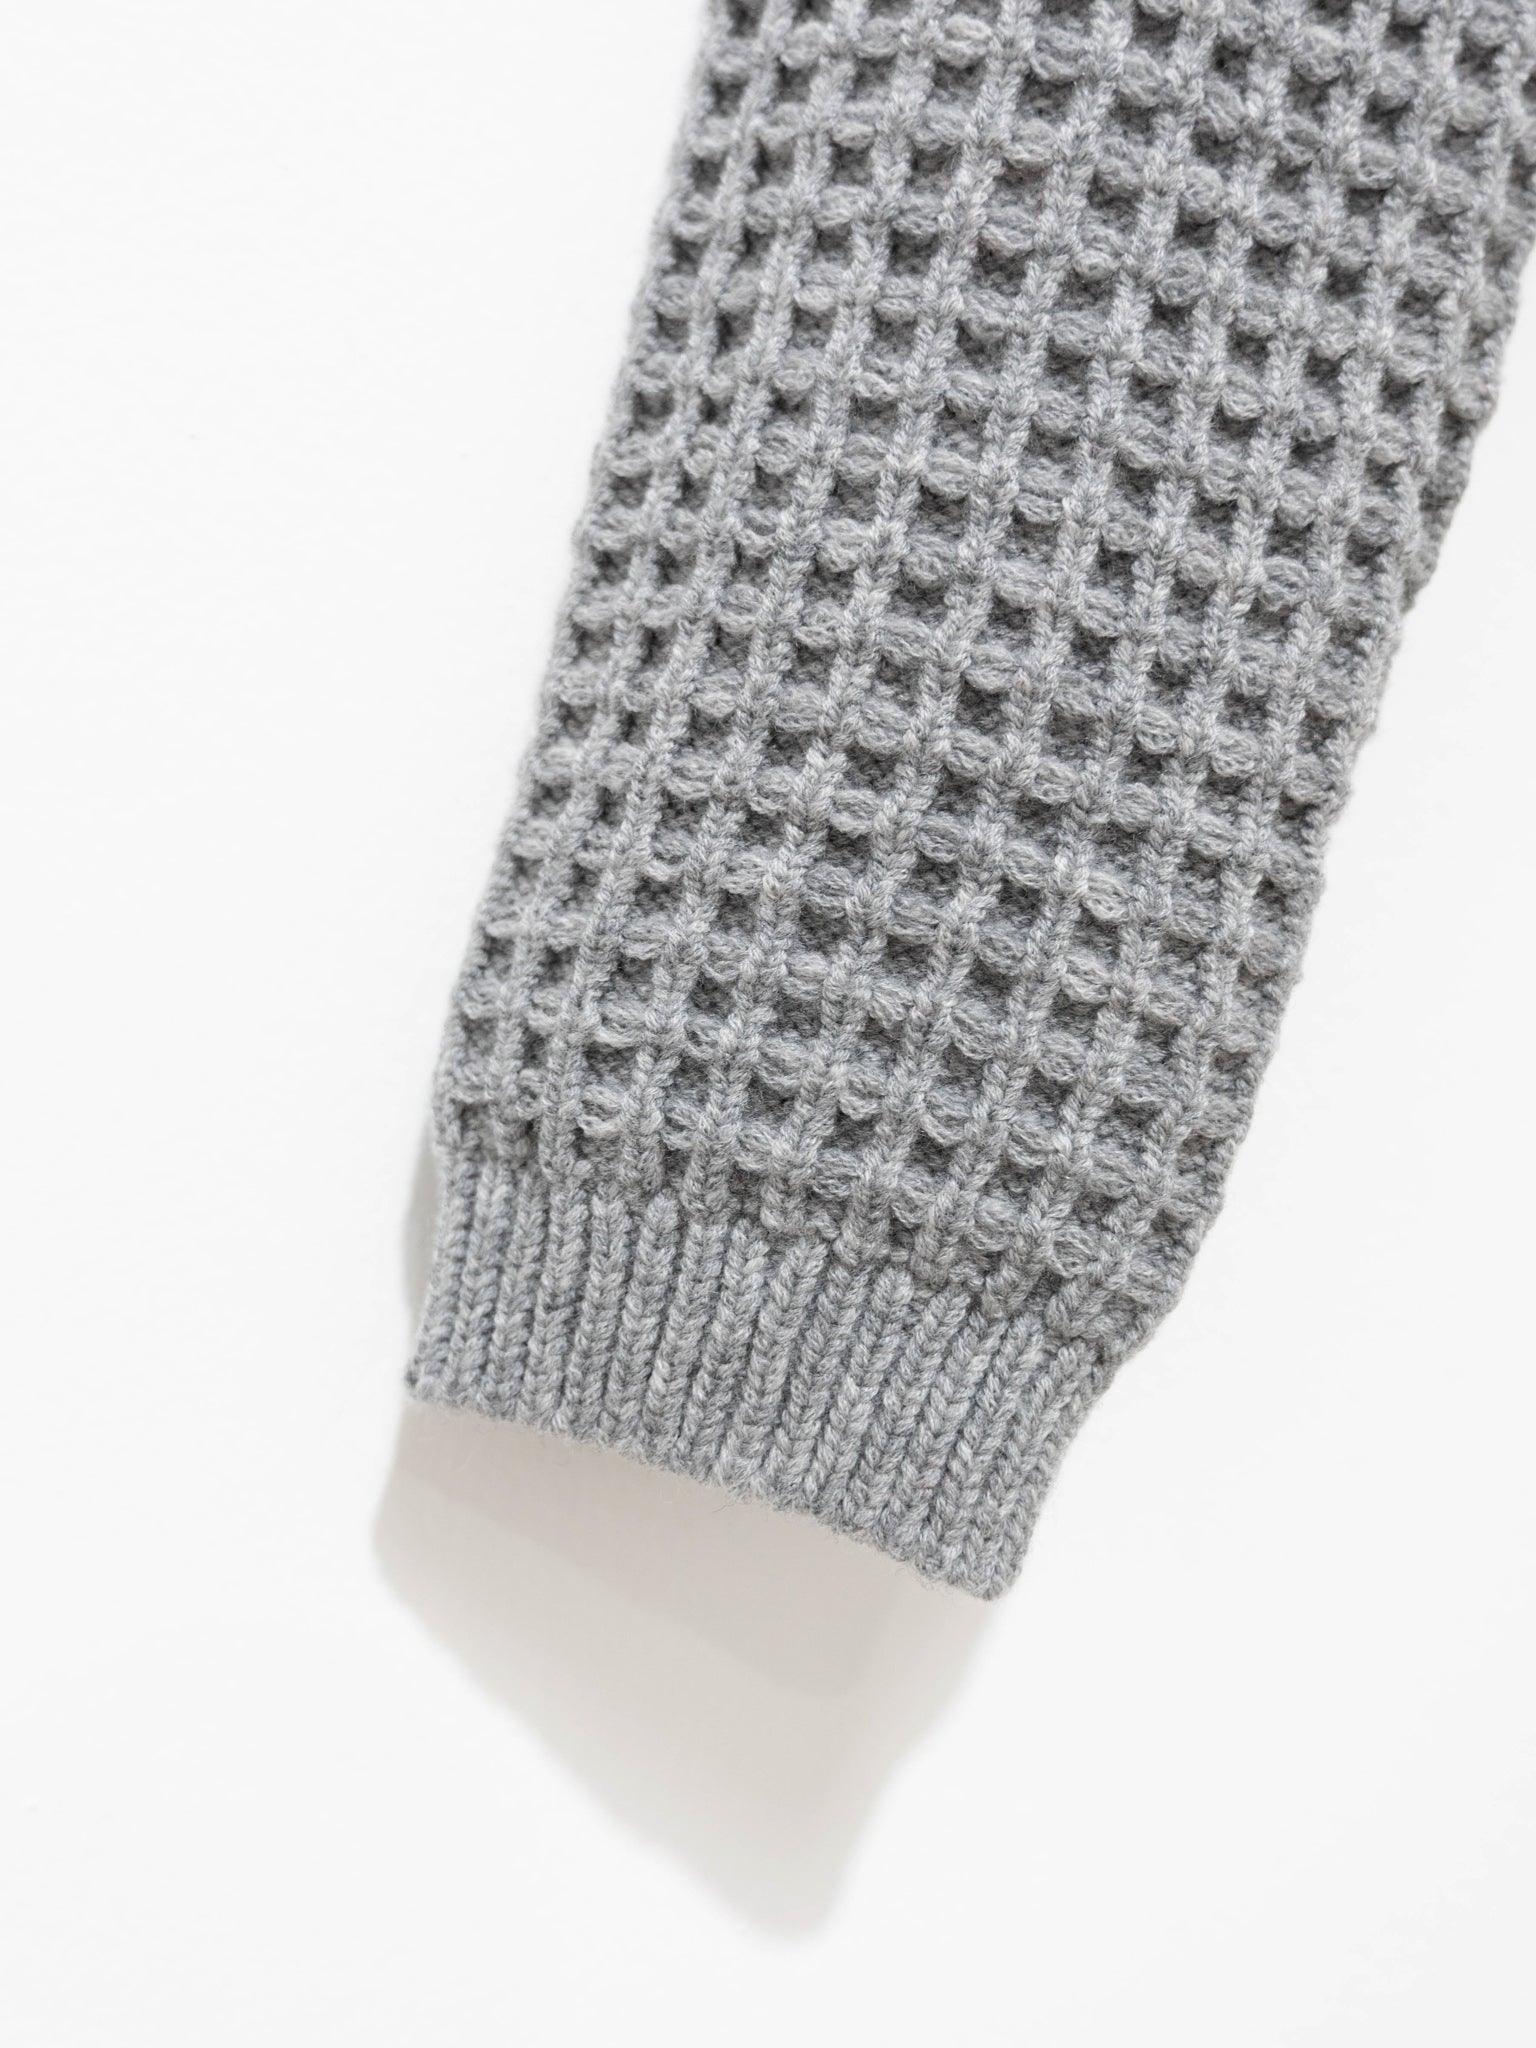 Namu Shop - Sara Lanzi Stitch Pull Knit - Grey